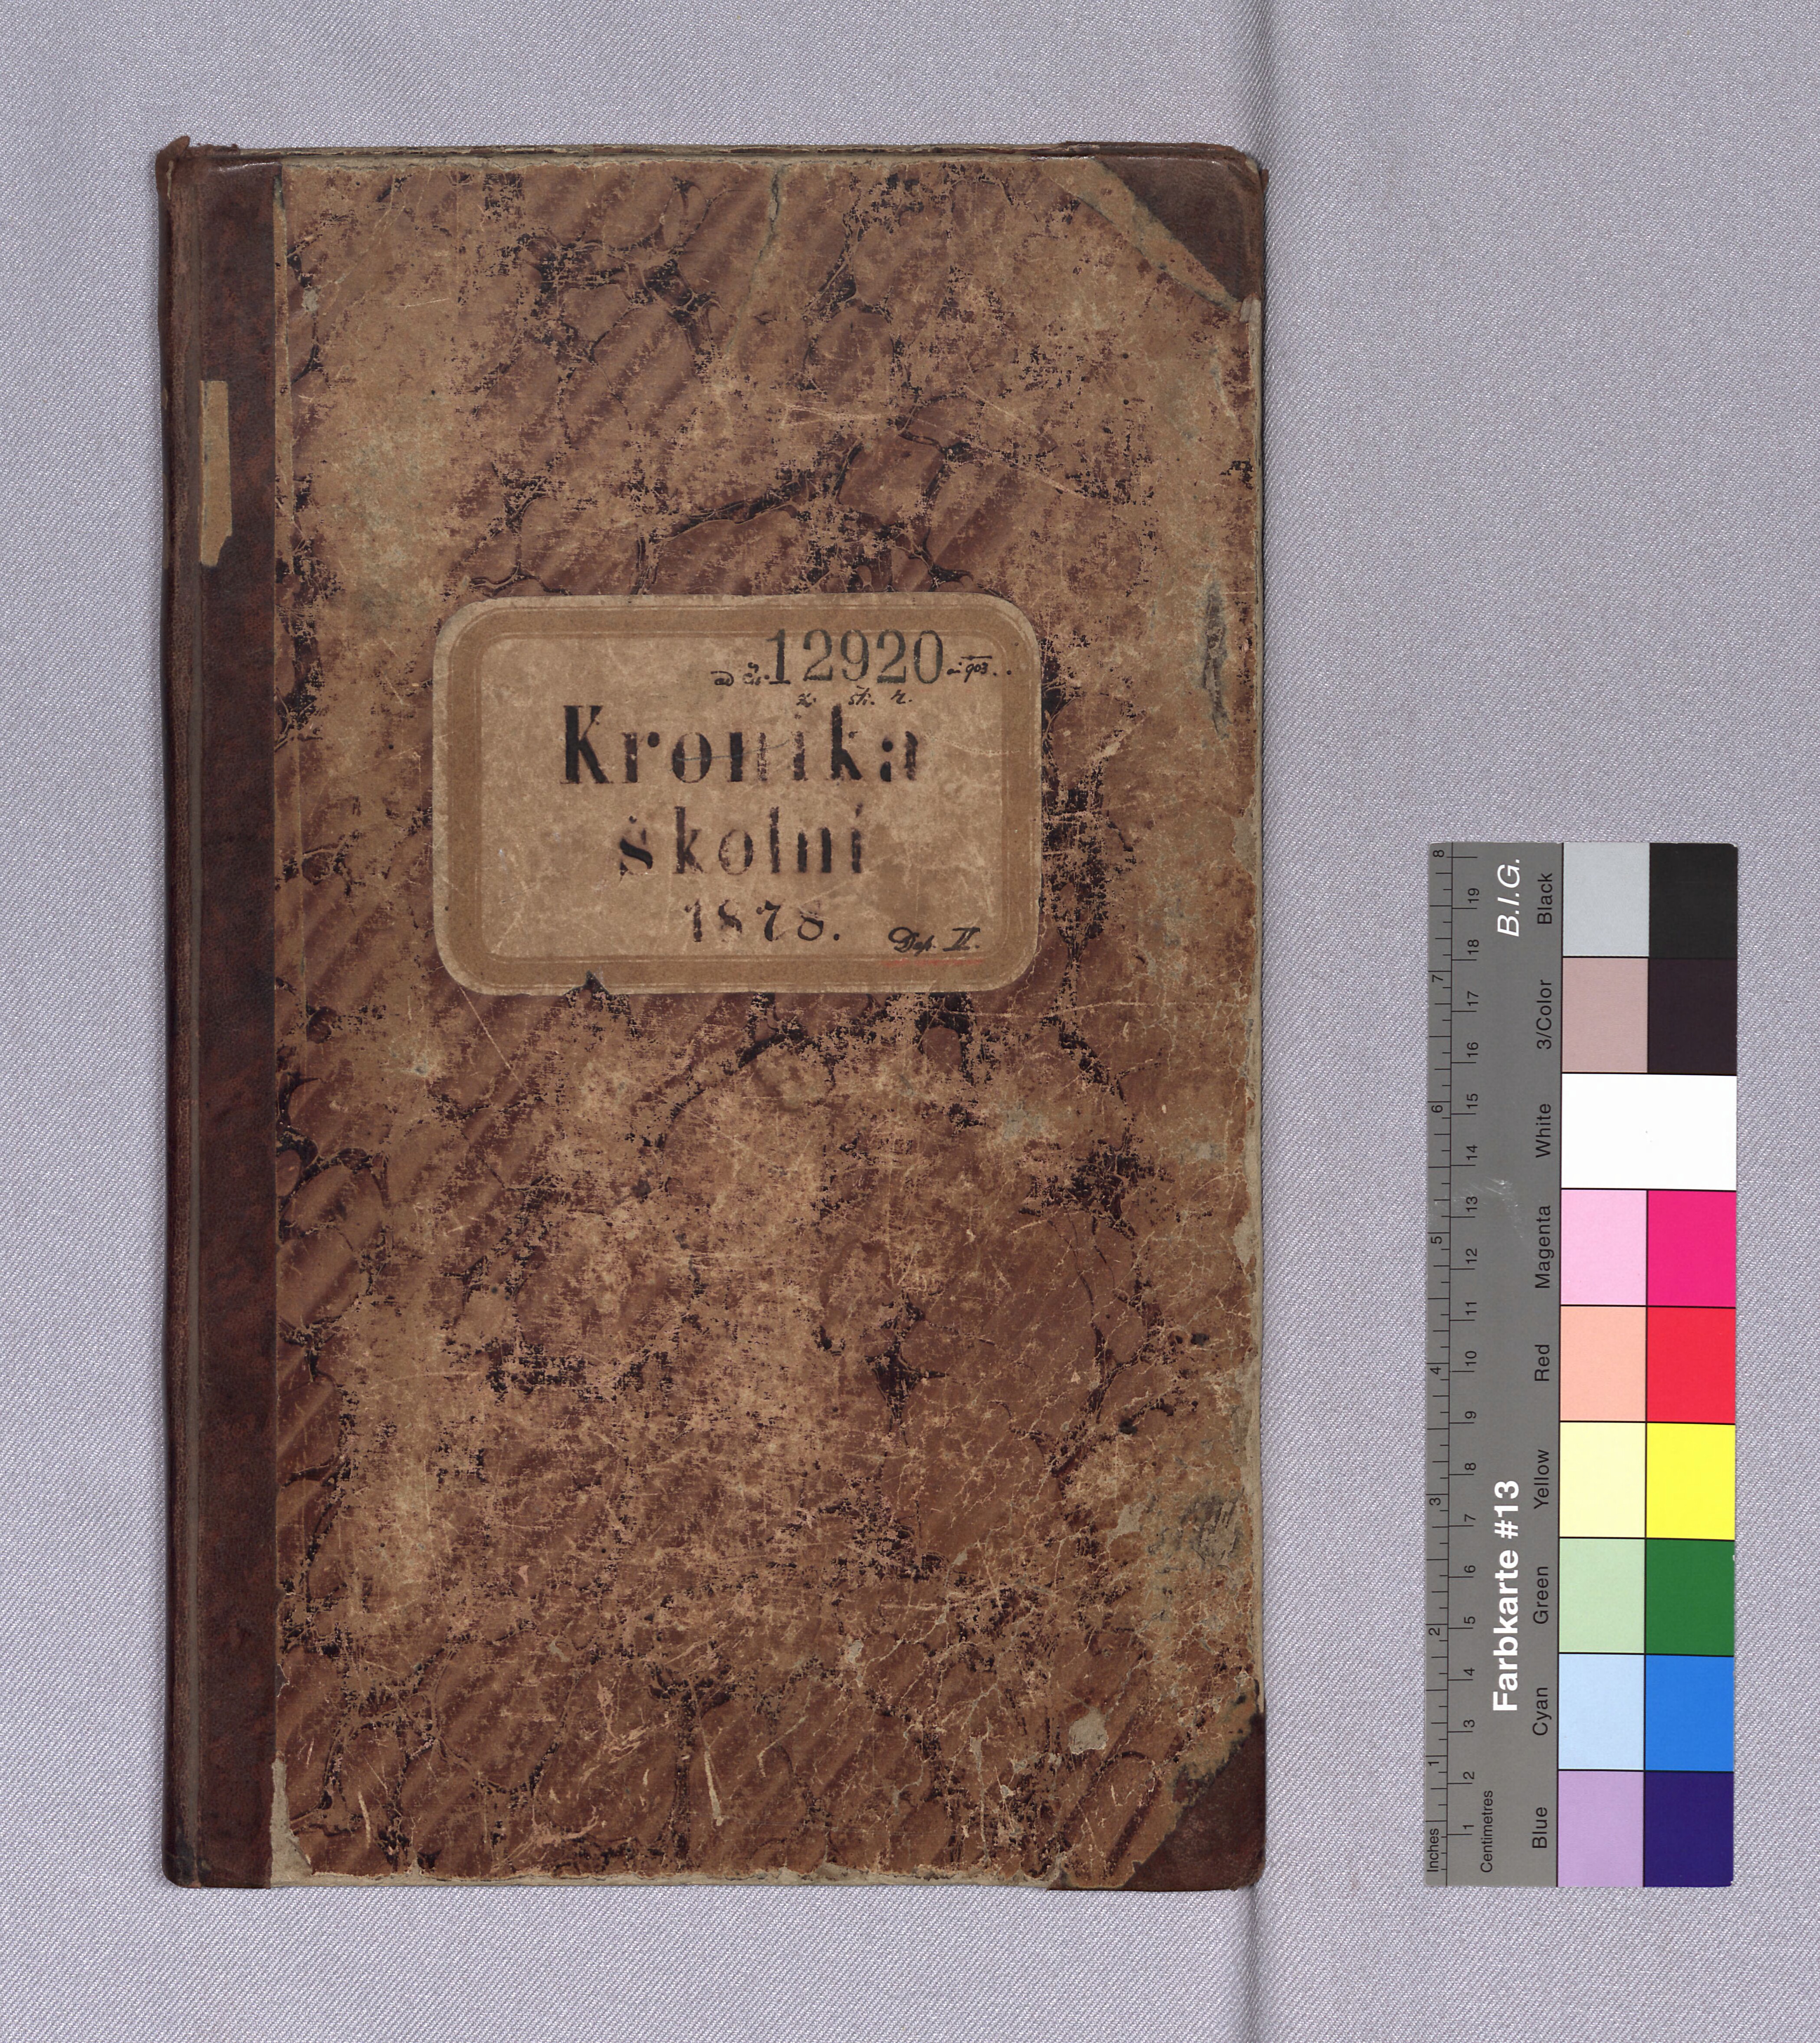 1. soap-kt_01298_skola-hradek-1878-1930_0010